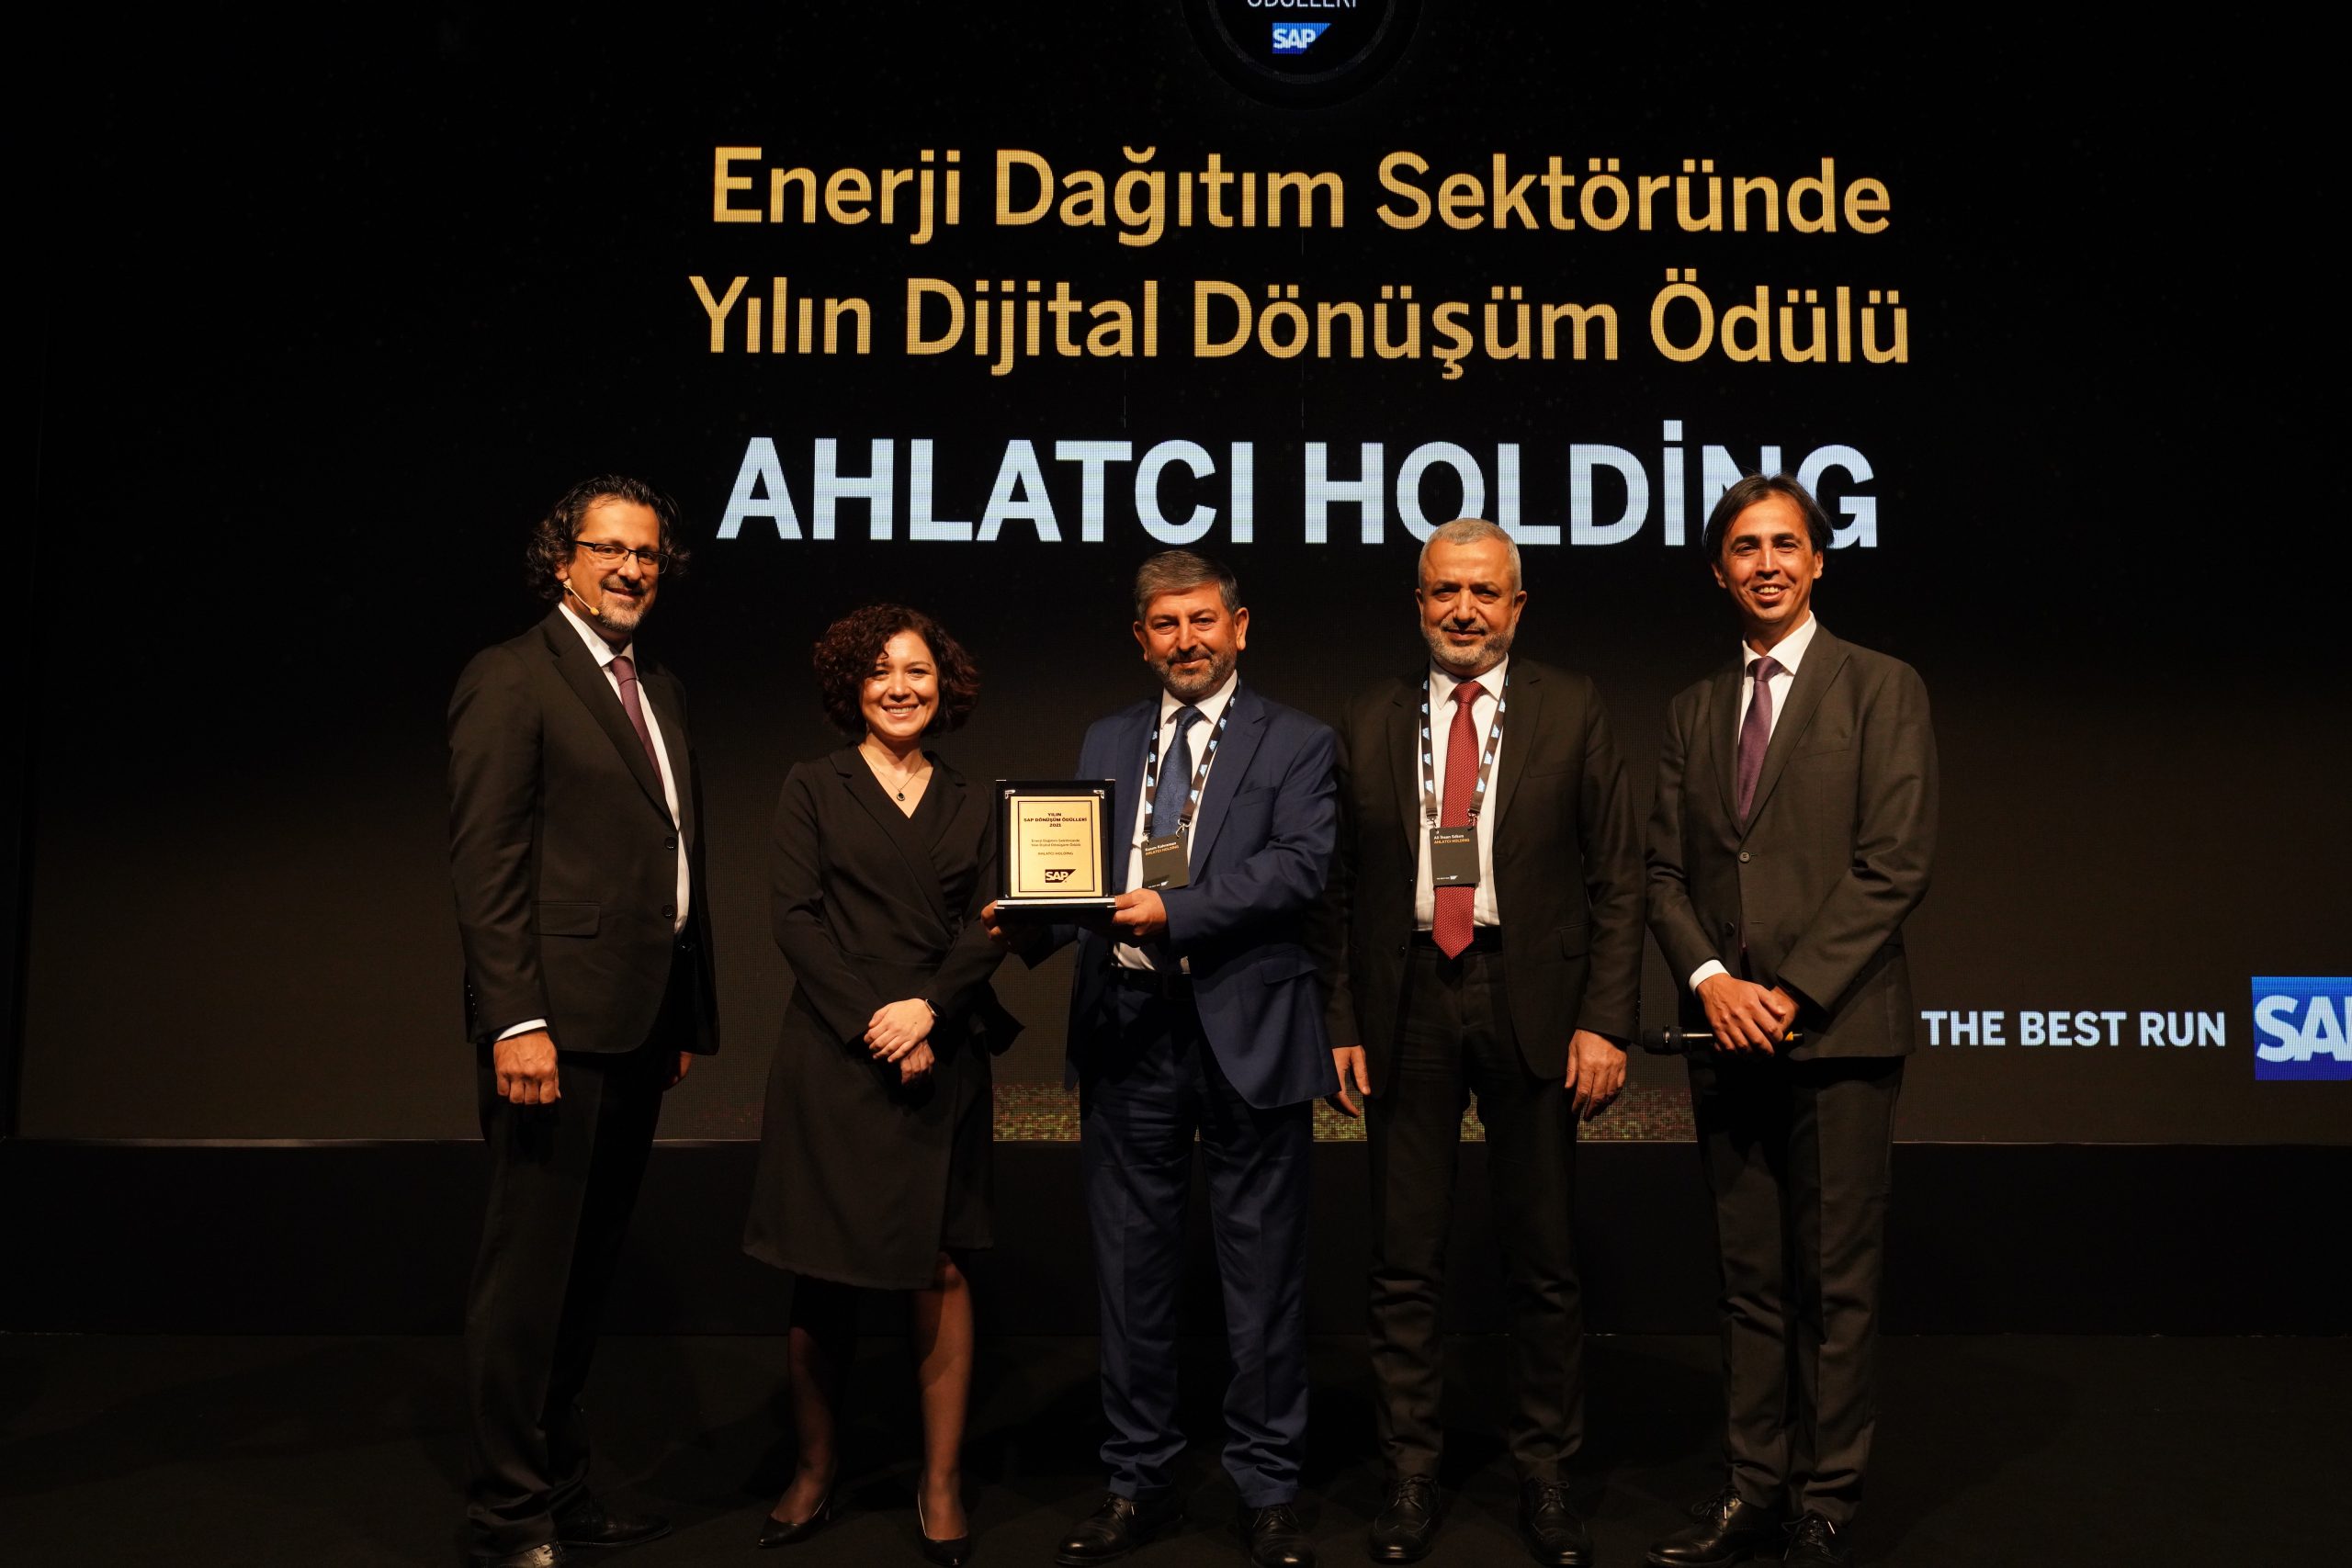 Ahlatcı Holding, Enerji Dağıtım Sektöründe Yılın Dijital Dönüşüm Ödülü’nü kazandı